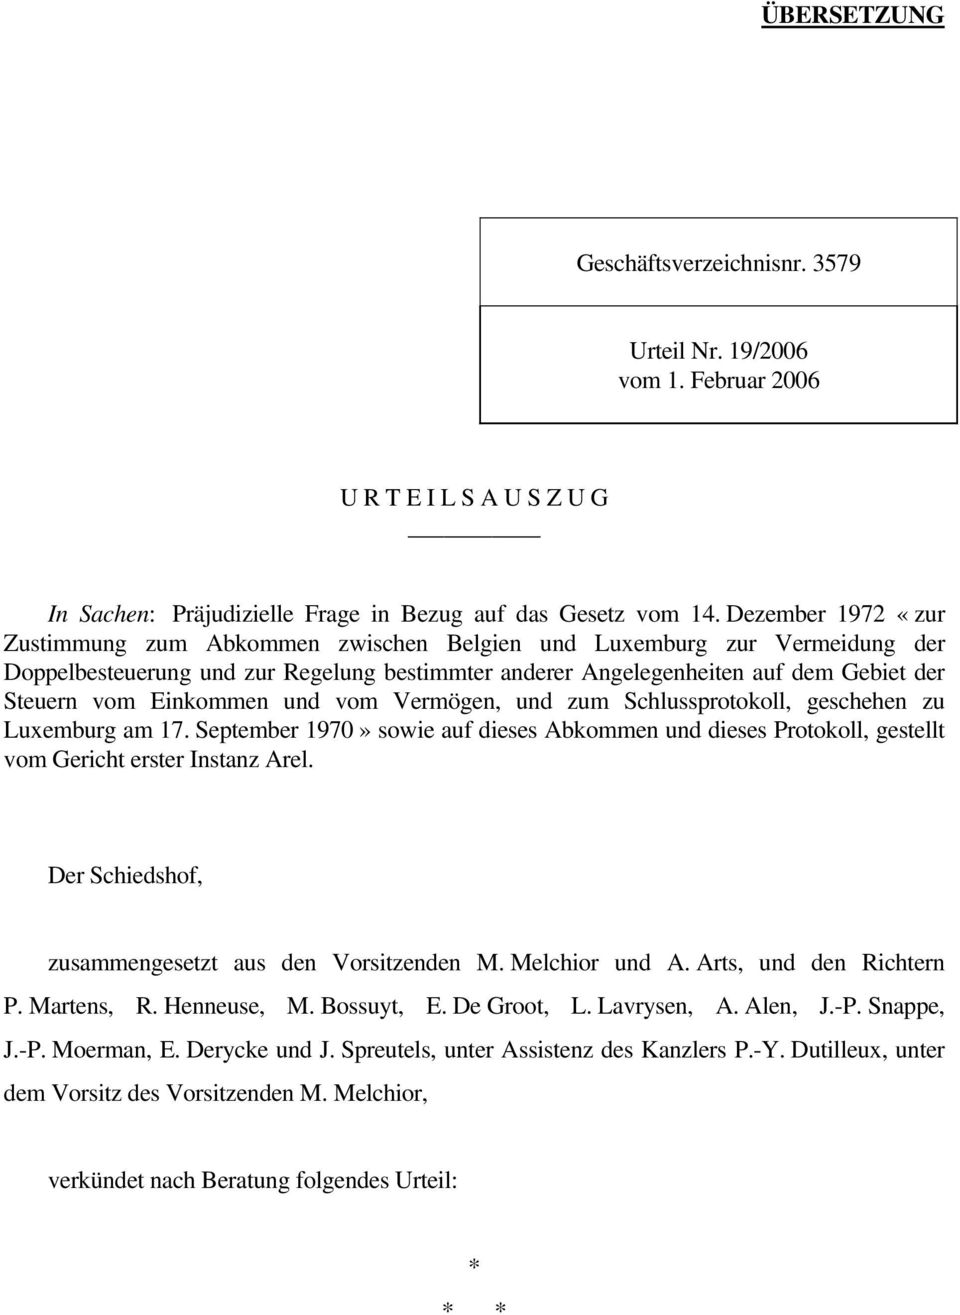 Einkommen und vom Vermögen, und zum Schlussprotokoll, geschehen zu Luxemburg am 17. September 1970» sowie auf dieses Abkommen und dieses Protokoll, gestellt vom Gericht erster Instanz Arel.